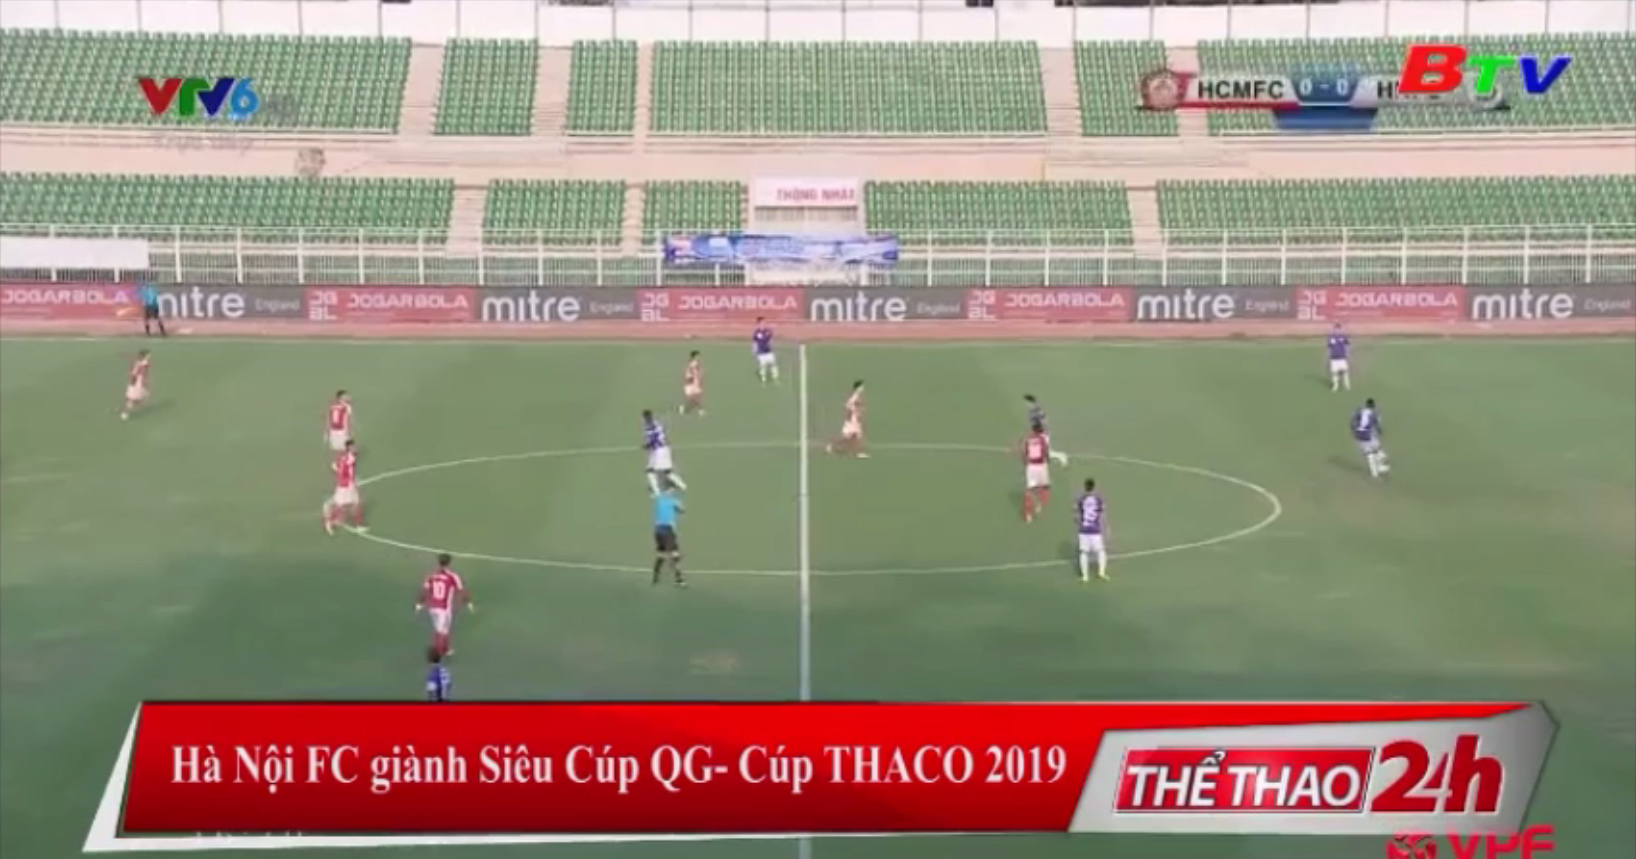 Hà Nội FC giành Siêu cúp Quốc gia - Cúp Thaco 2019